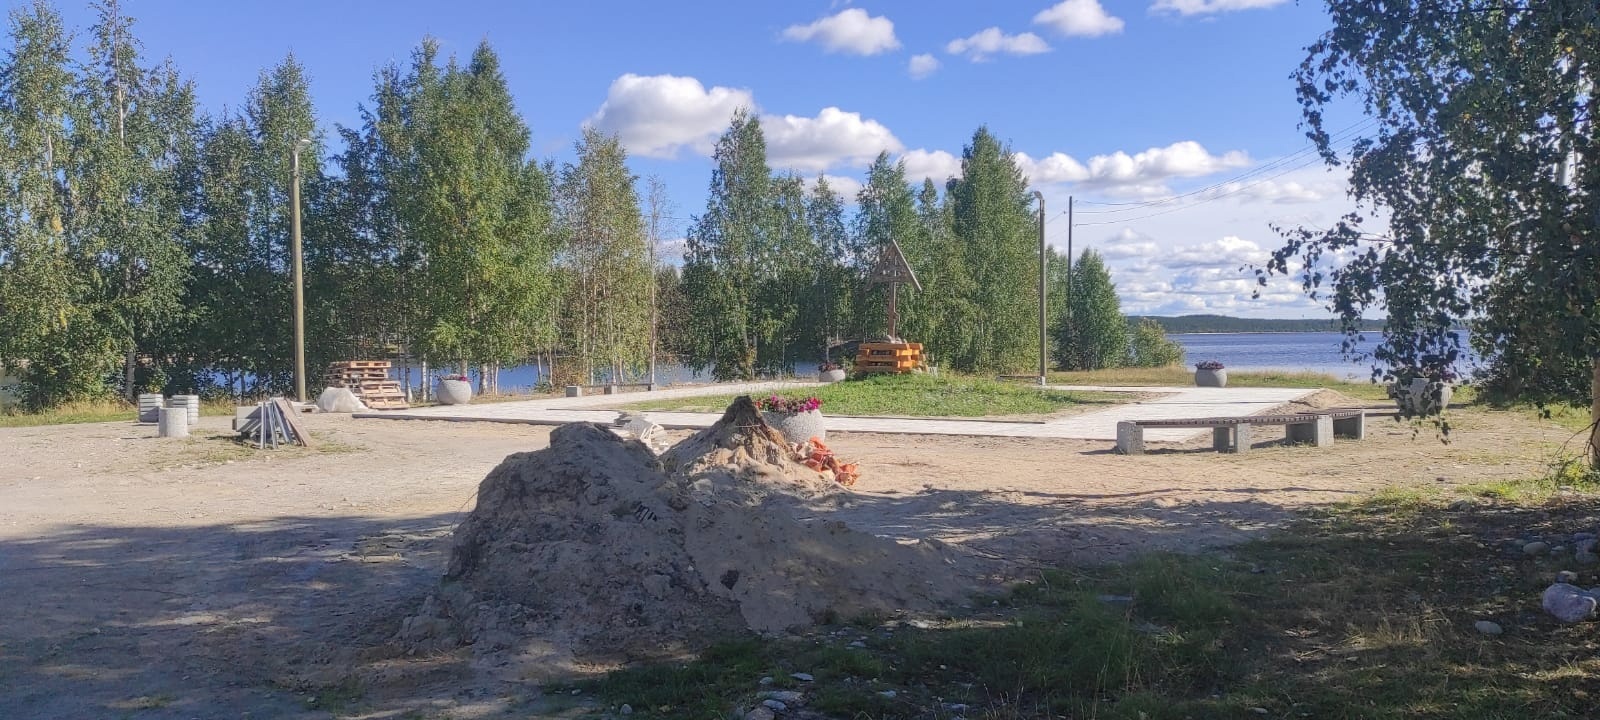 Runoranta-puistikko sijaitsee Lönnrotin männyn vieressä. Puistikon kunnostus sai alkunsa viime vuonna. Kuva: Karjalan kansallisuus- ja aluepolitiikan ministeriön VKontakte-sivu